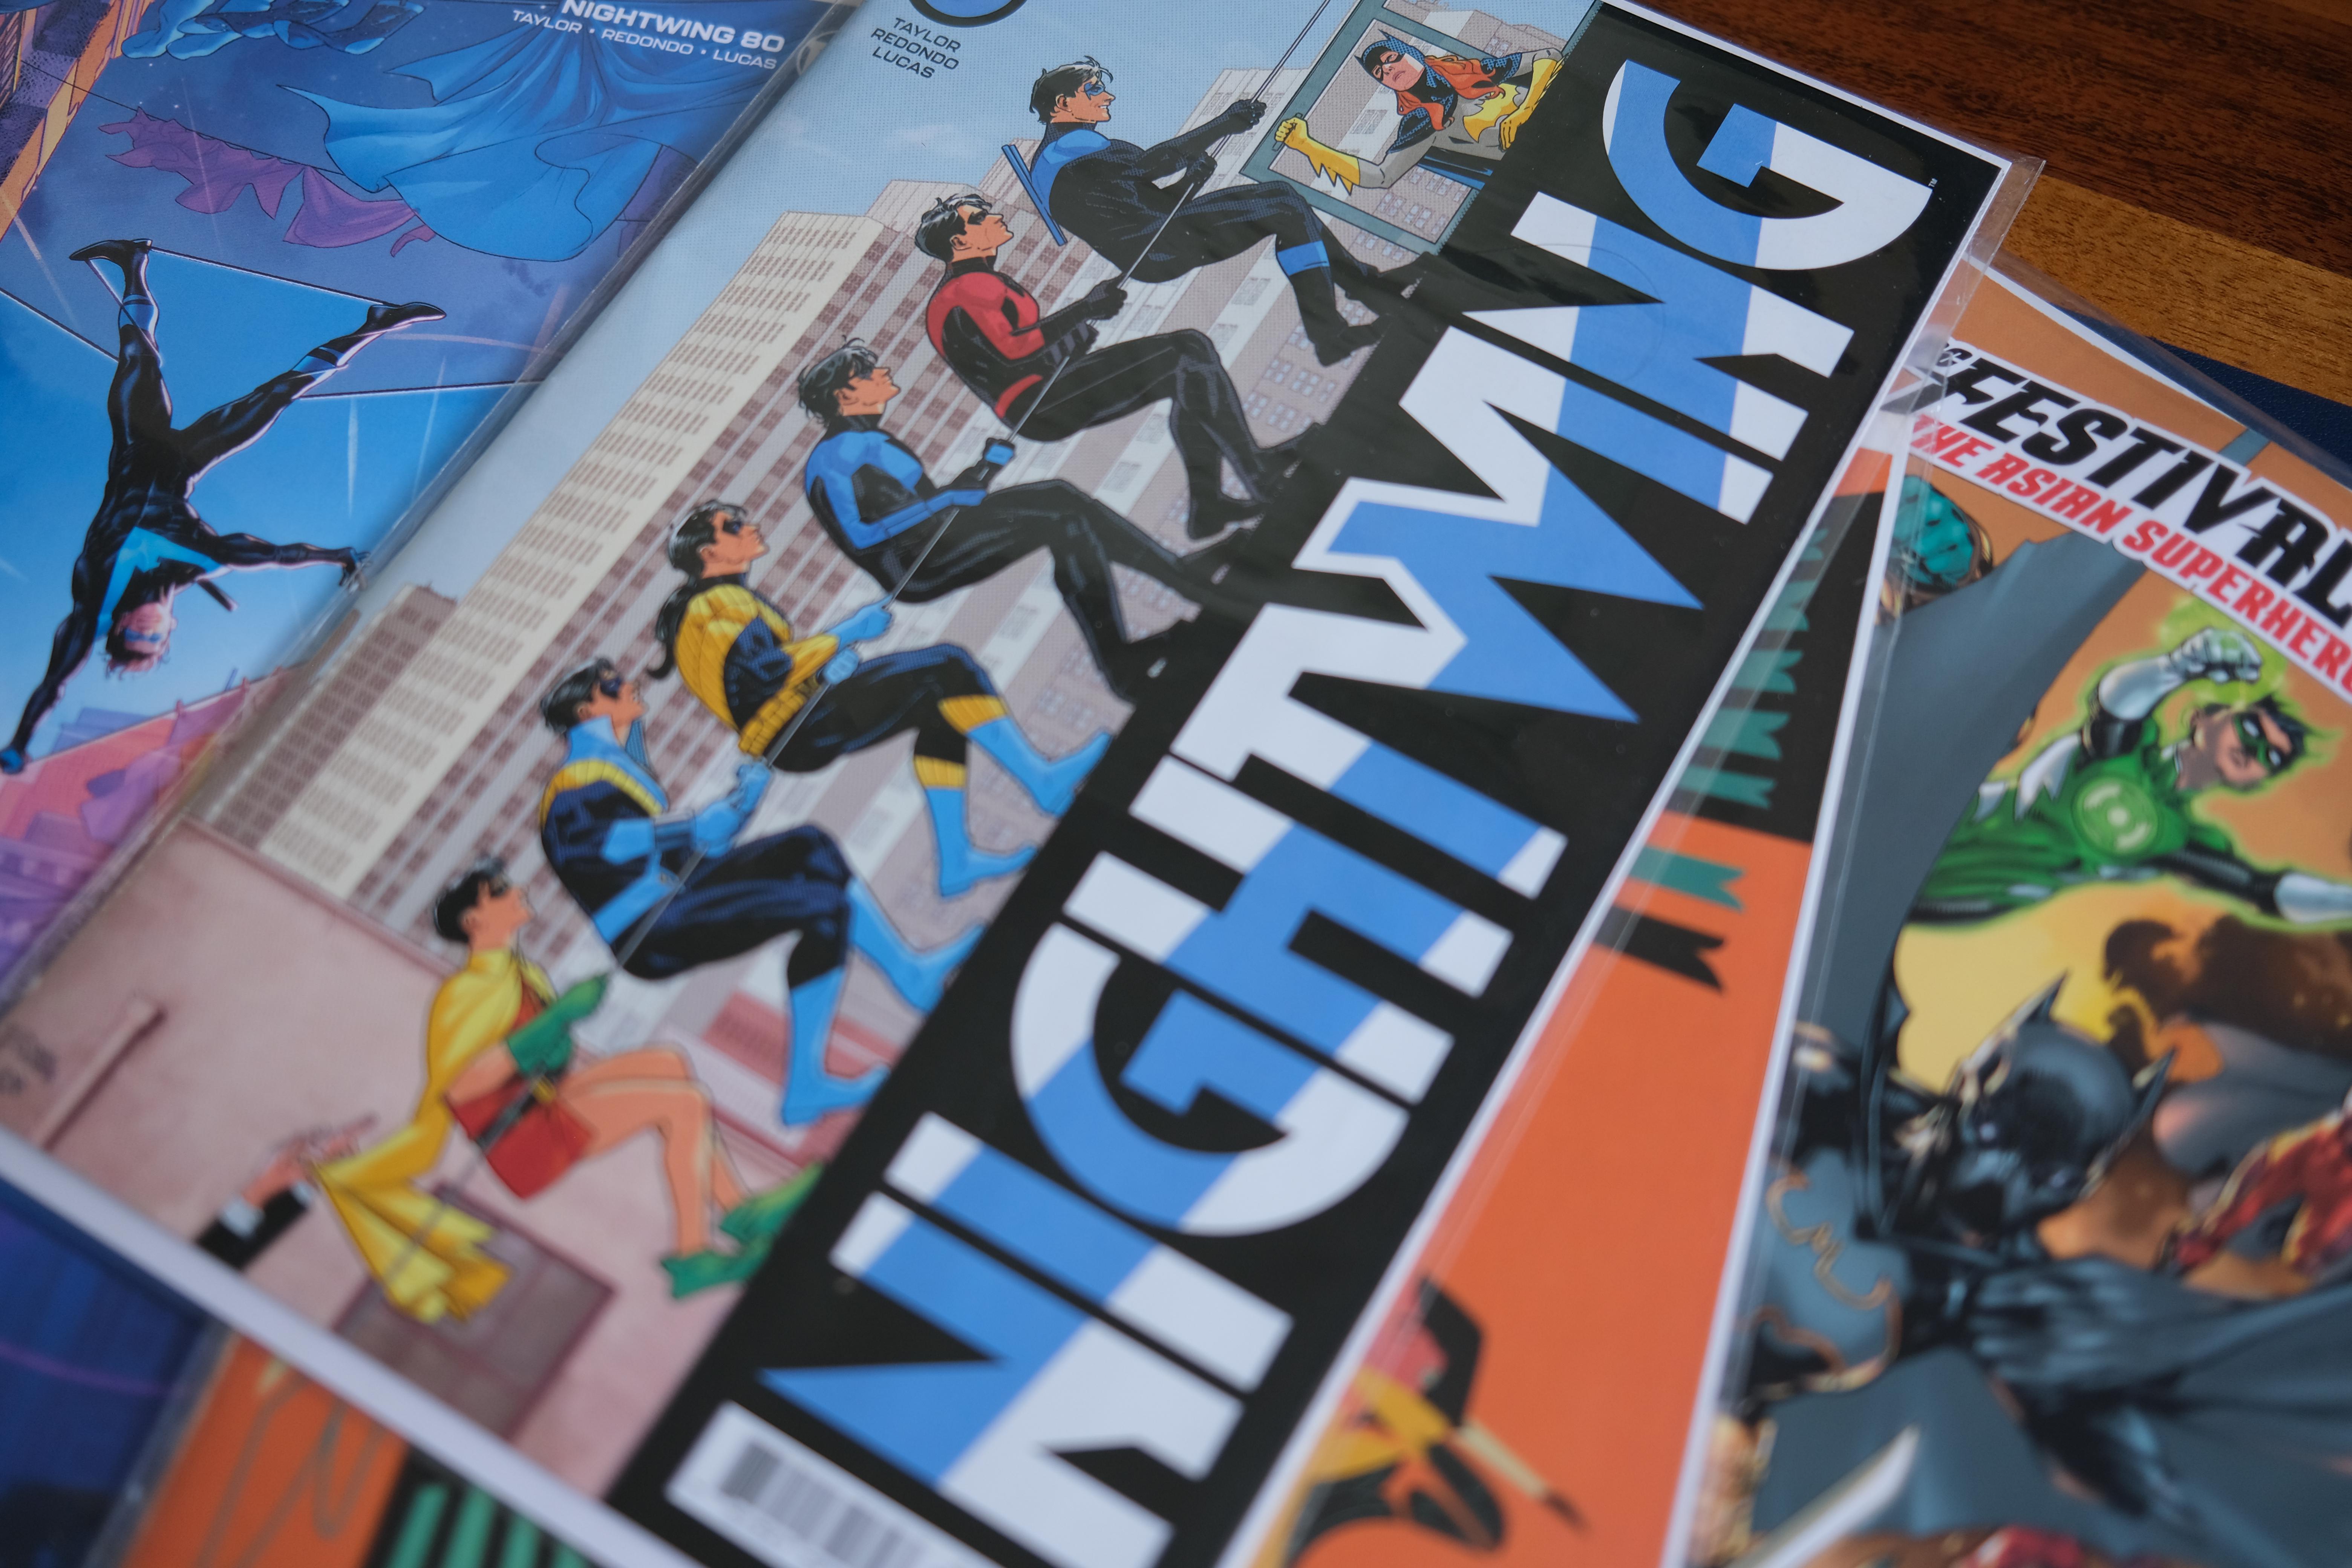 Photographie de bandes dessinées américaines, dont quelques numéros de Nightwing publiés par DC Comics.